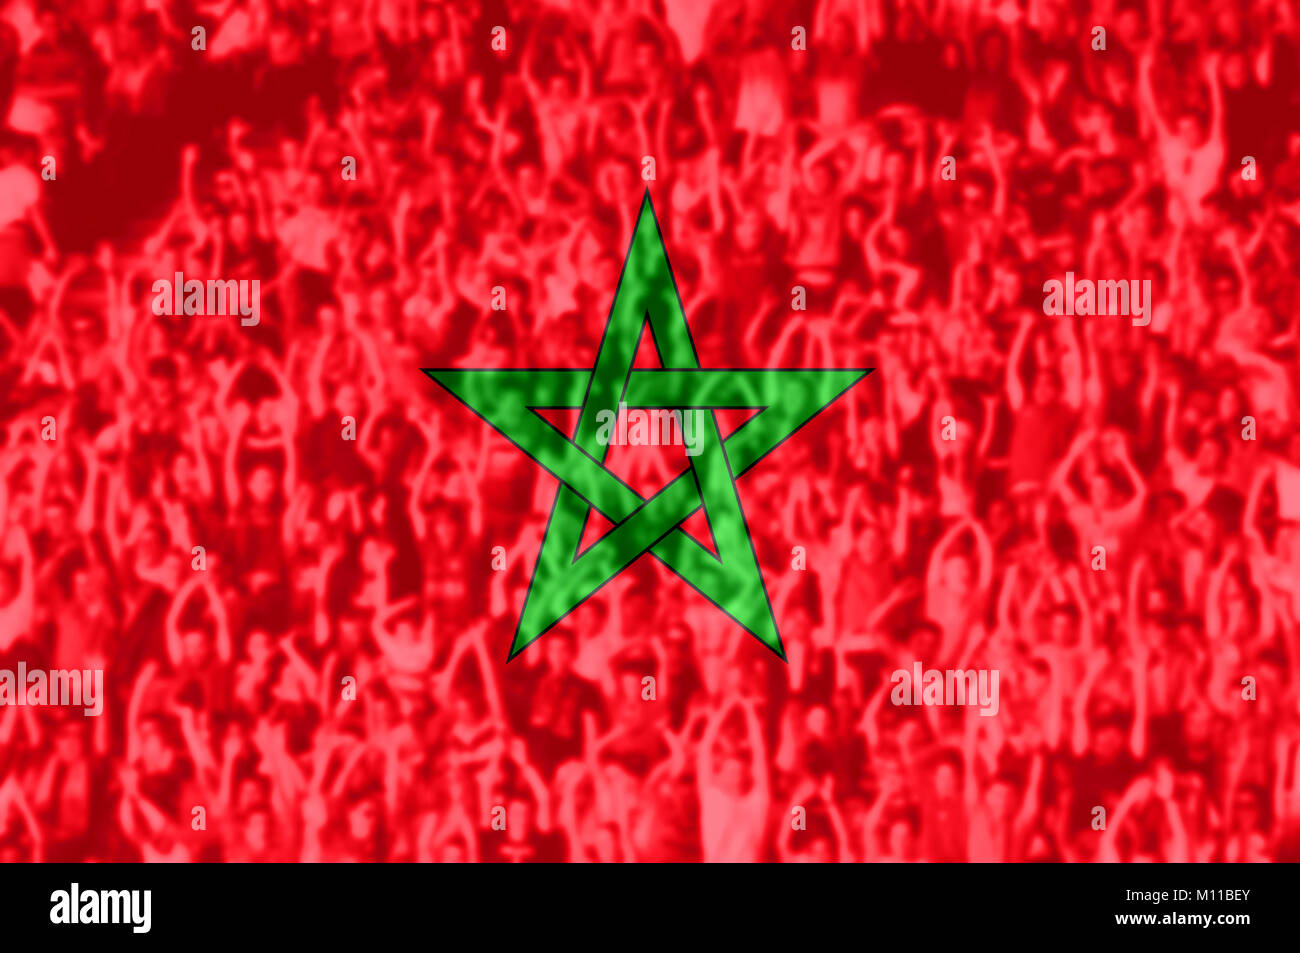 Foule de football, soccer fans avec bras levés avec drapeau Maroc mélange Banque D'Images